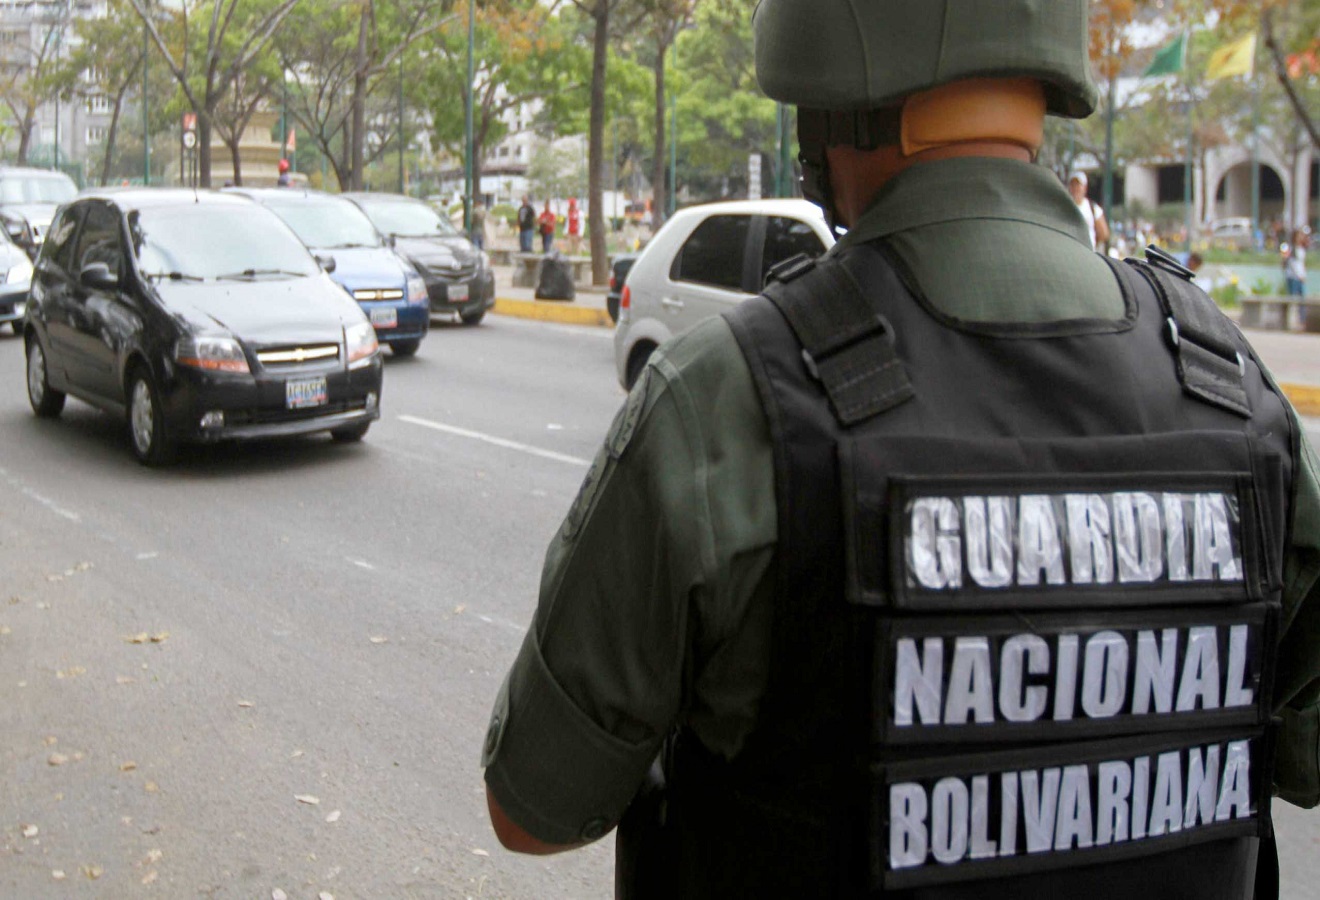 Guardia-Nacional-Bolivariana